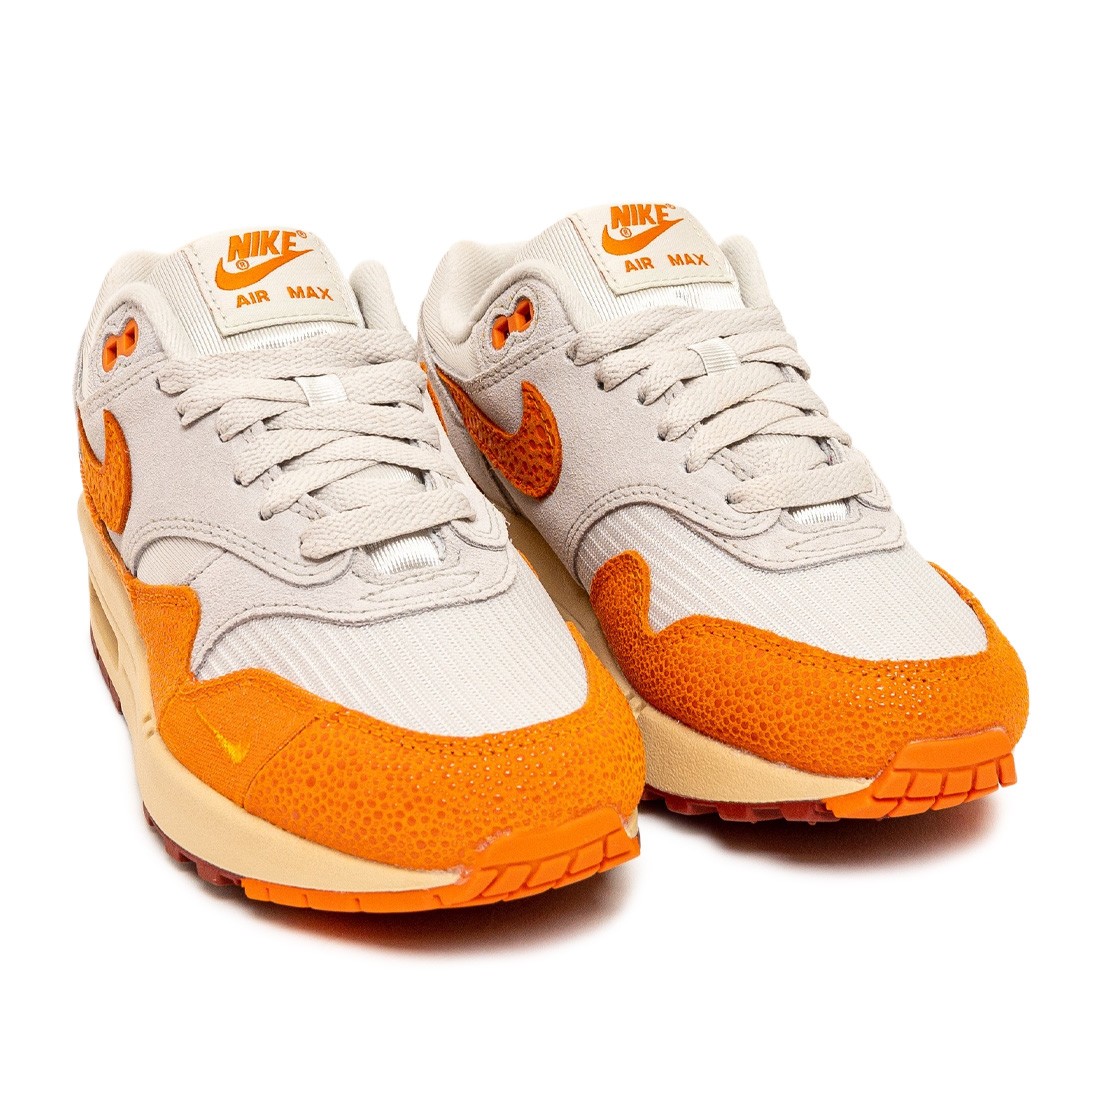 Nike Air Max 1 Master Magma Orange (Women's) - DZ4709-001 - US